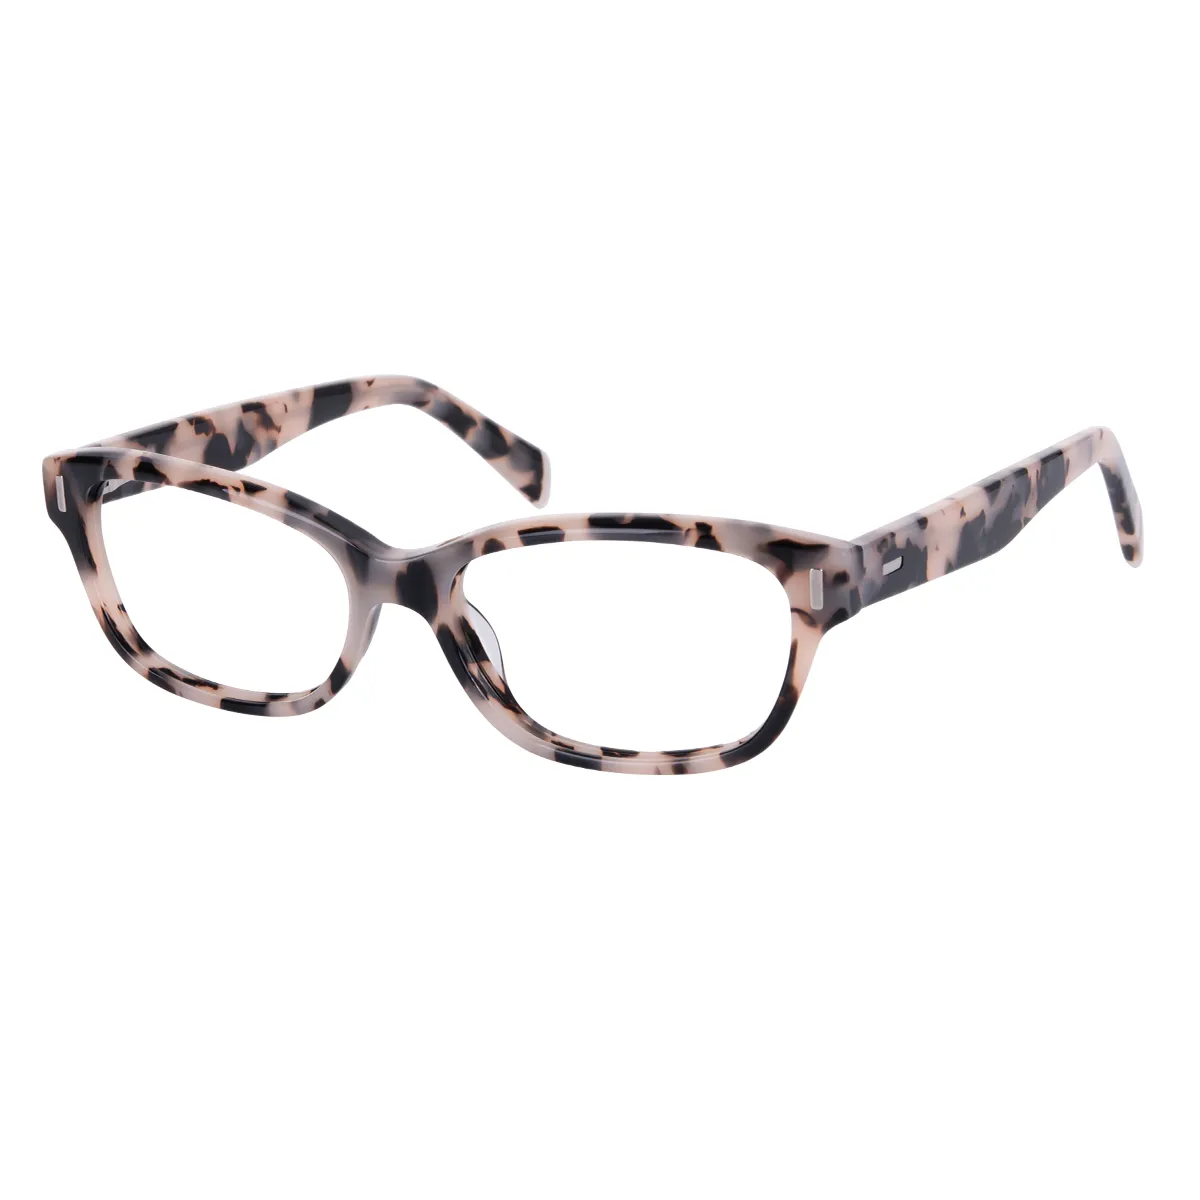 Melissa - Cat-eye Tortoiseshell Glasses for Women